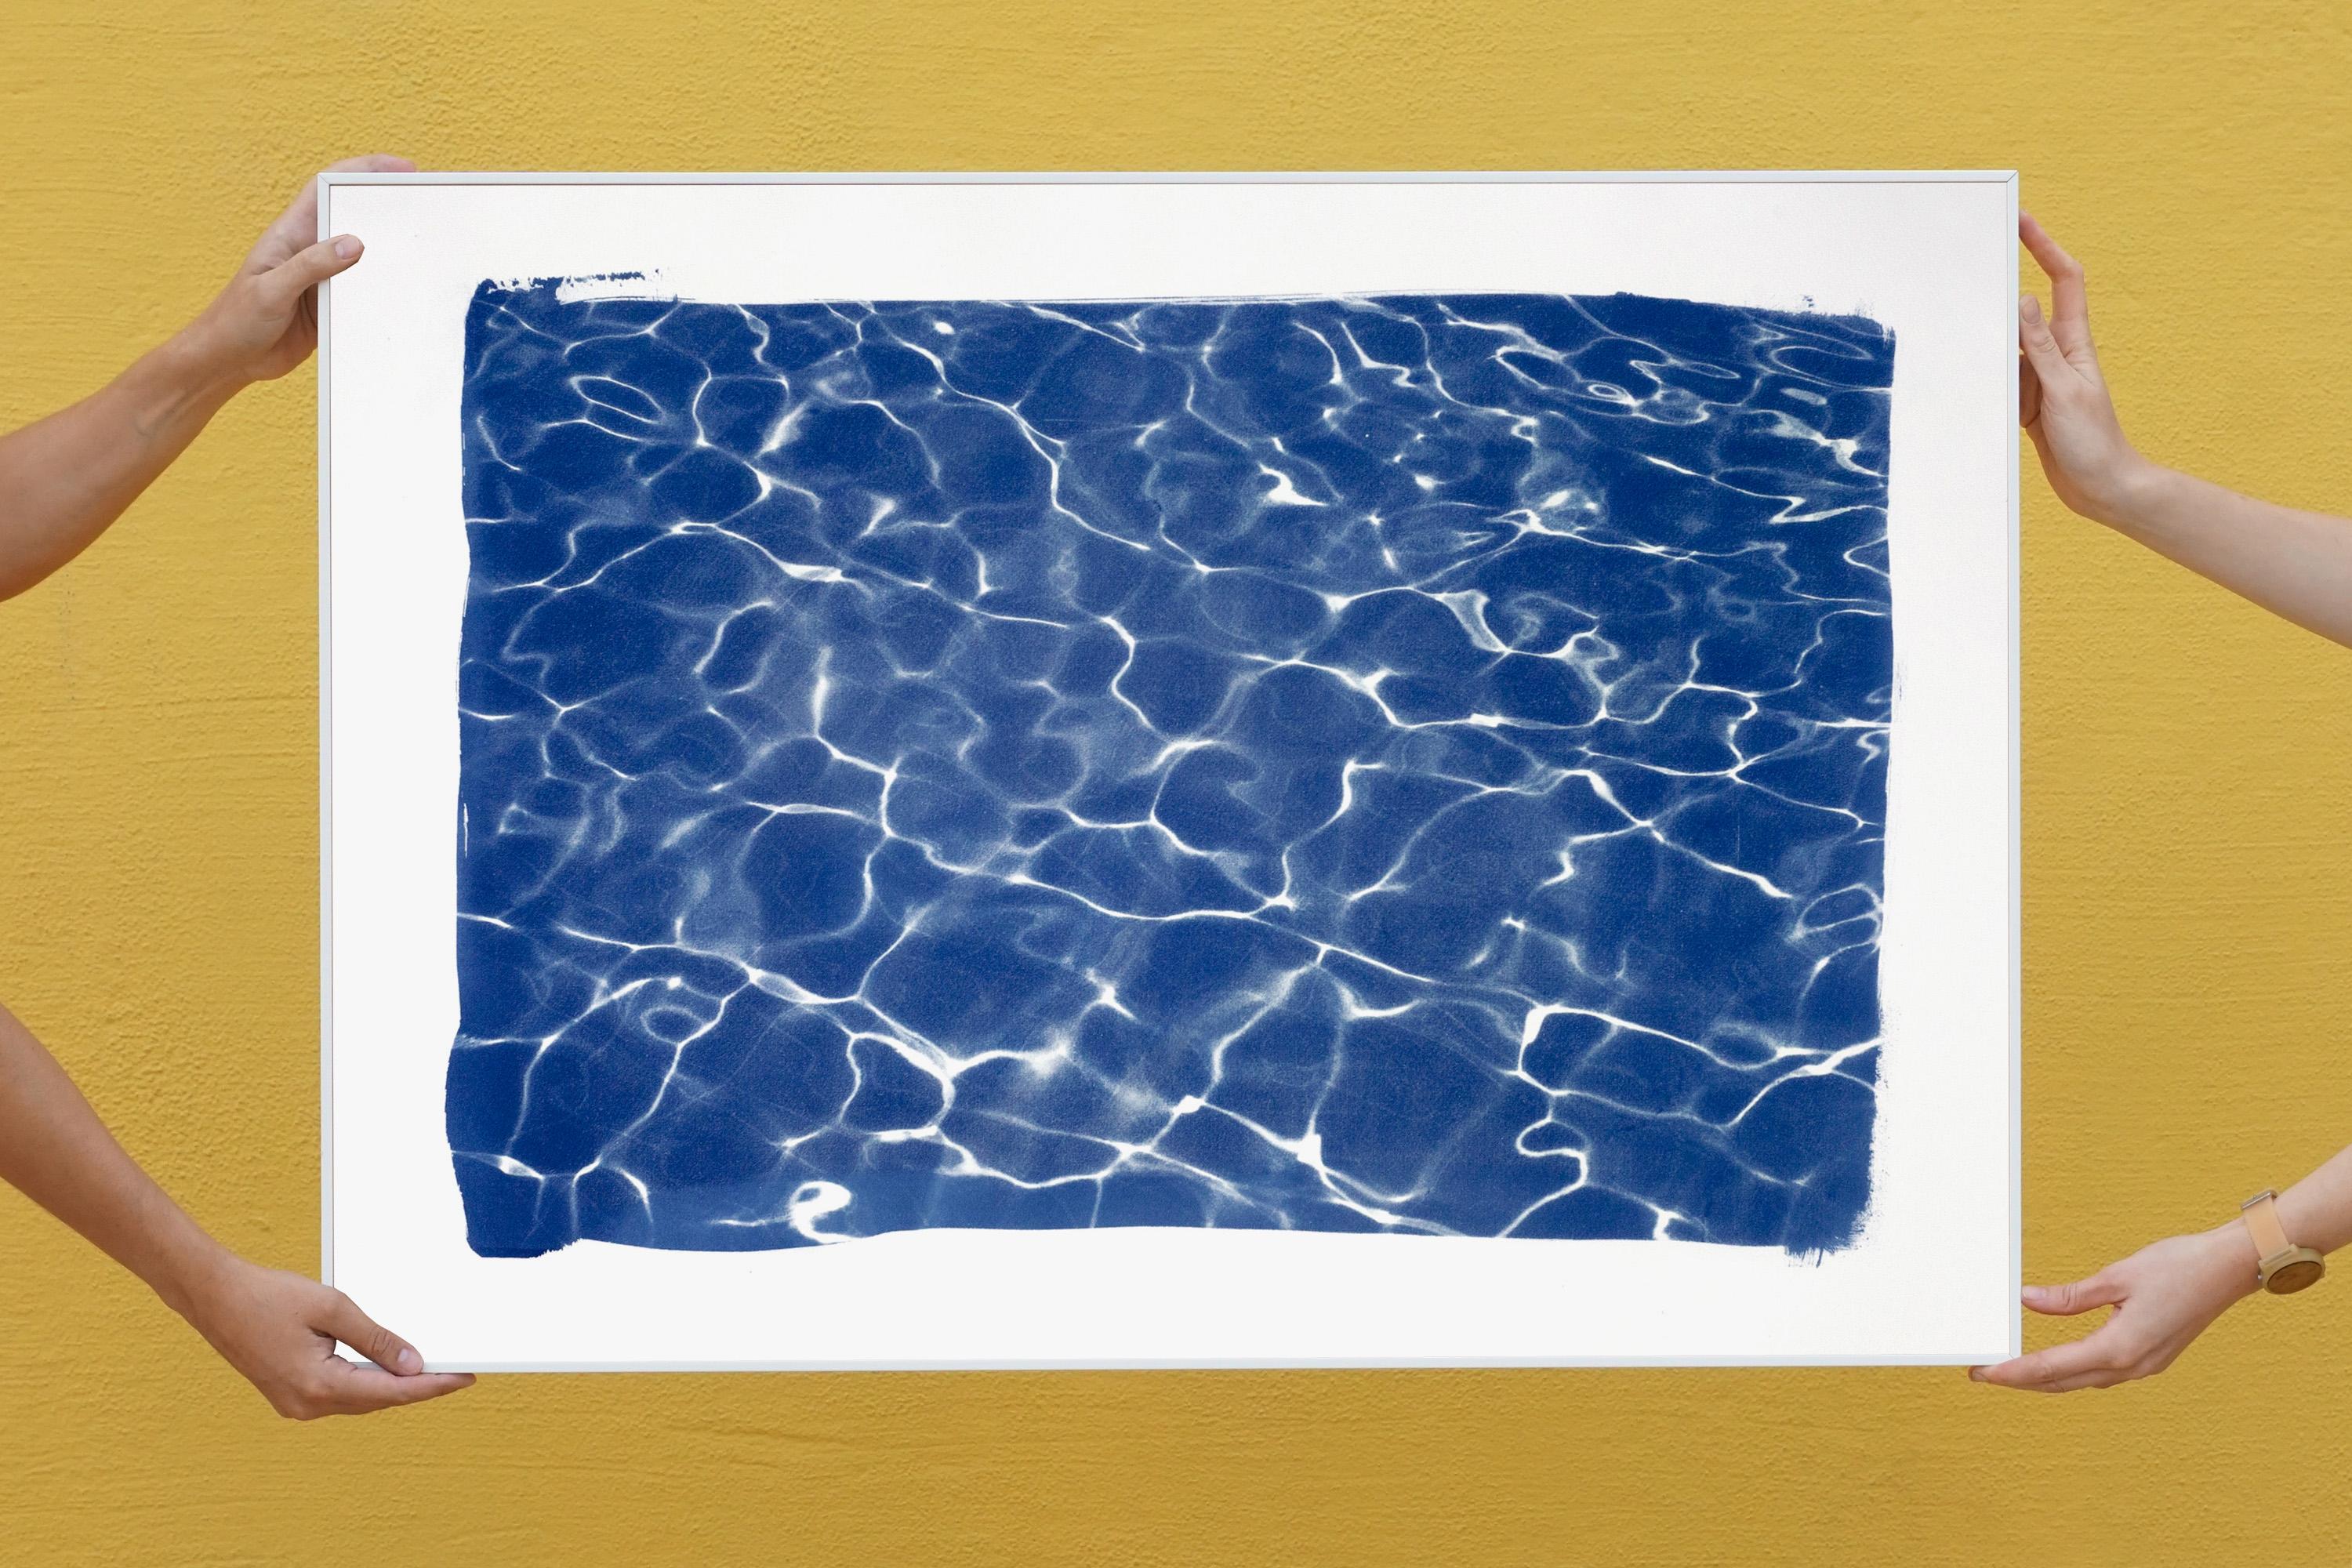 Hollywood Pool House Glow, édition exclusive de tirages cyanotypes à motifs bleus faits à la main - Contemporain Art par Kind of Cyan